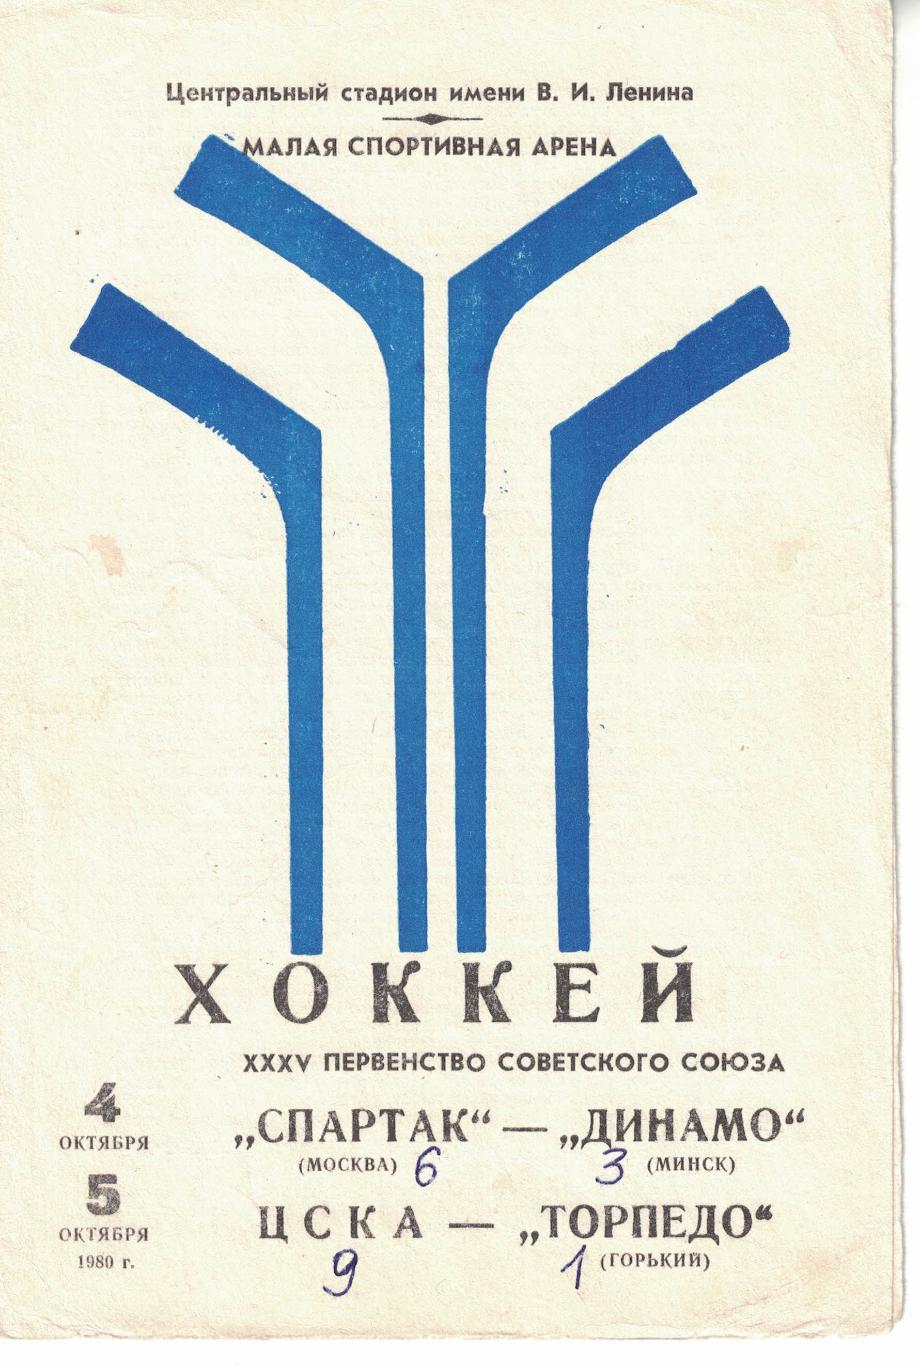 Спартак Москва - Динамо Минск, ЦСКА - Торпедо Горький 04 и 05.10.1980